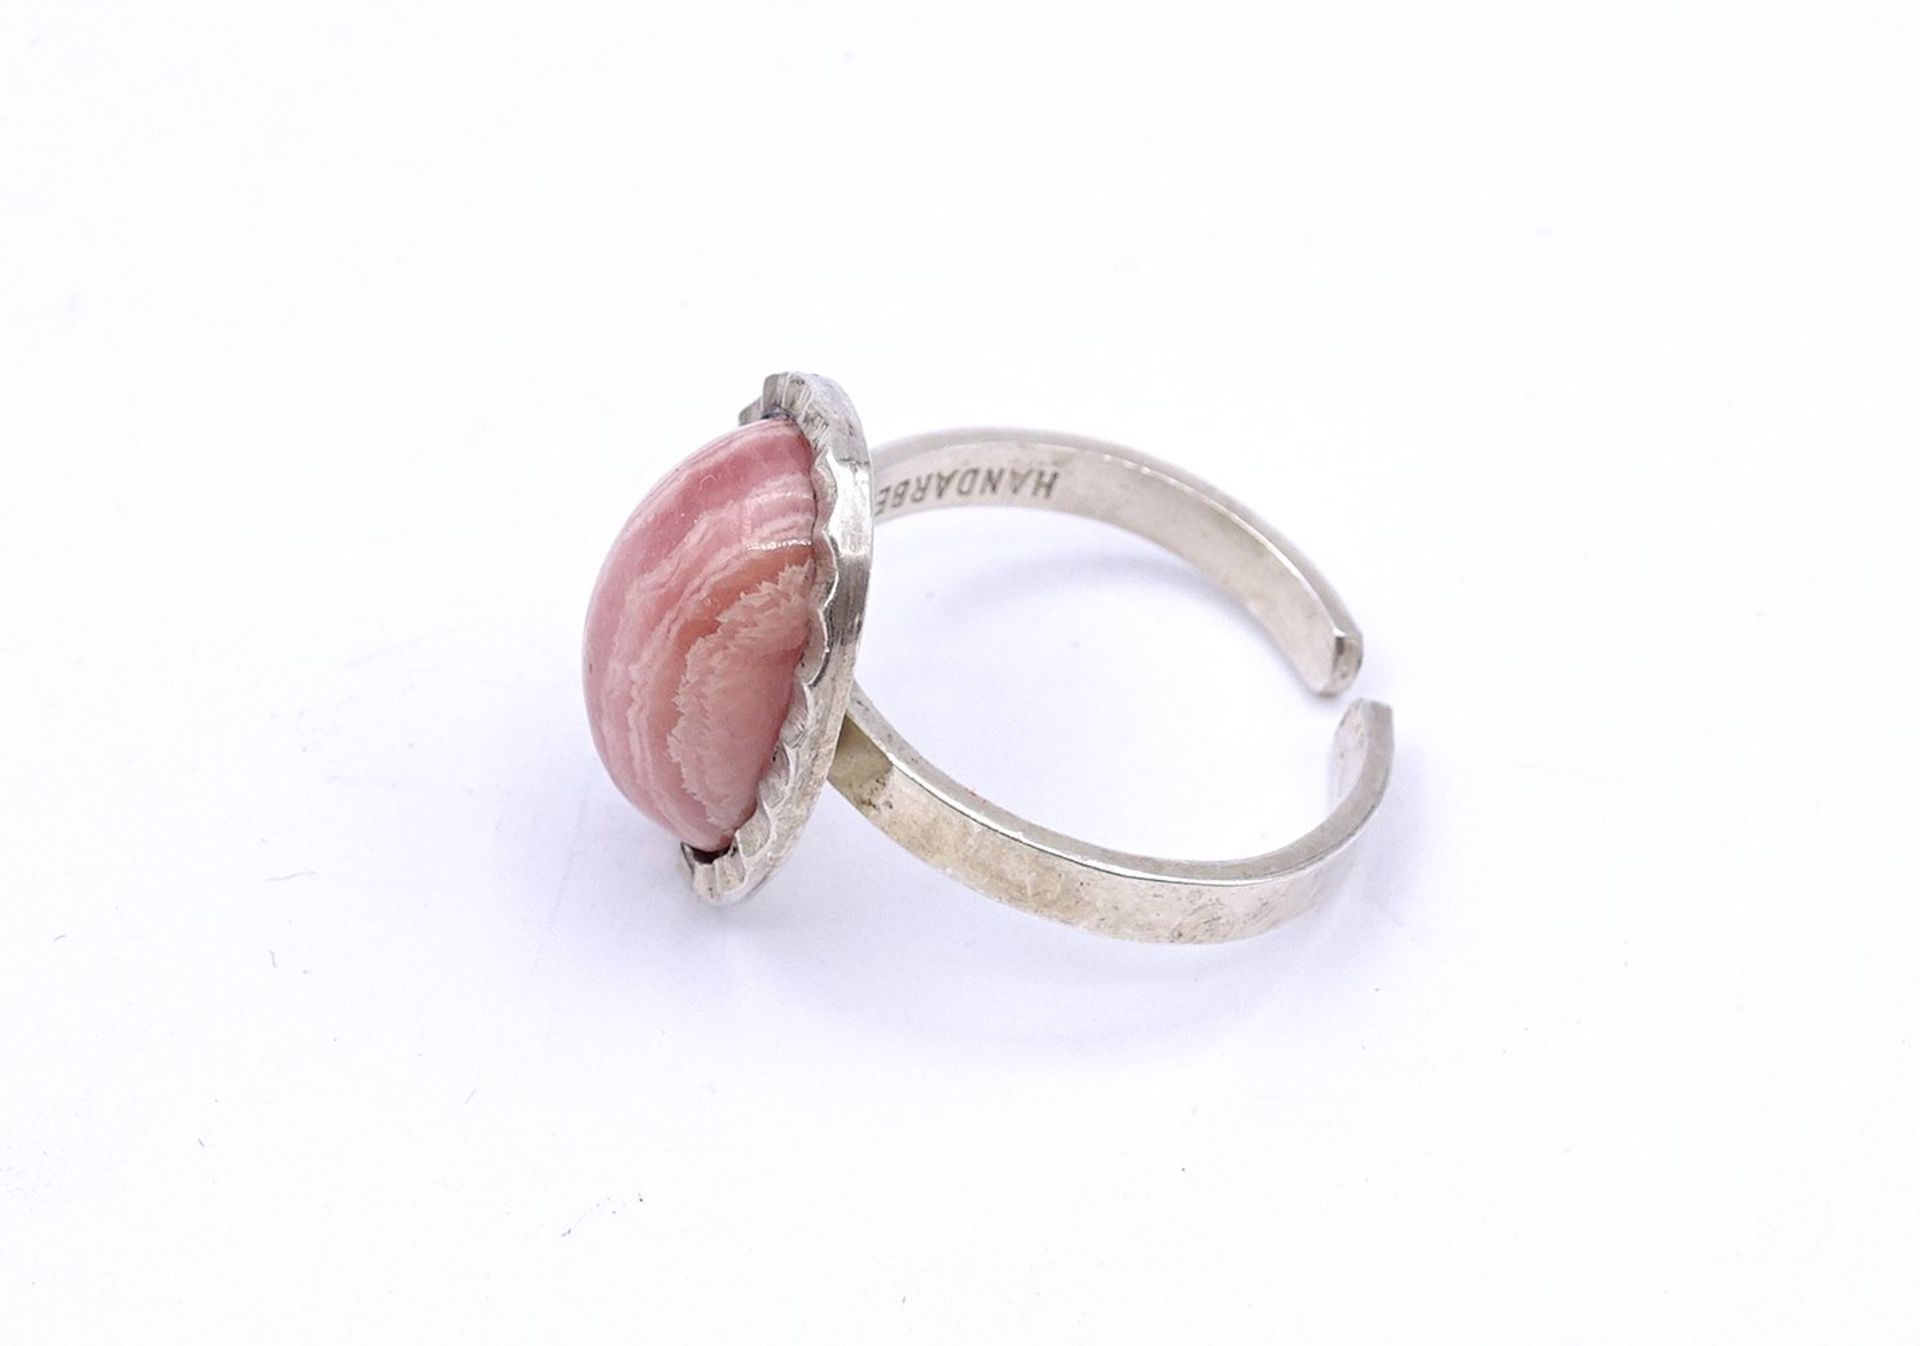 830er Silber Ring mit Rosenquarz Cabochon, offene Ringschiene, 5,4g. - Bild 3 aus 3